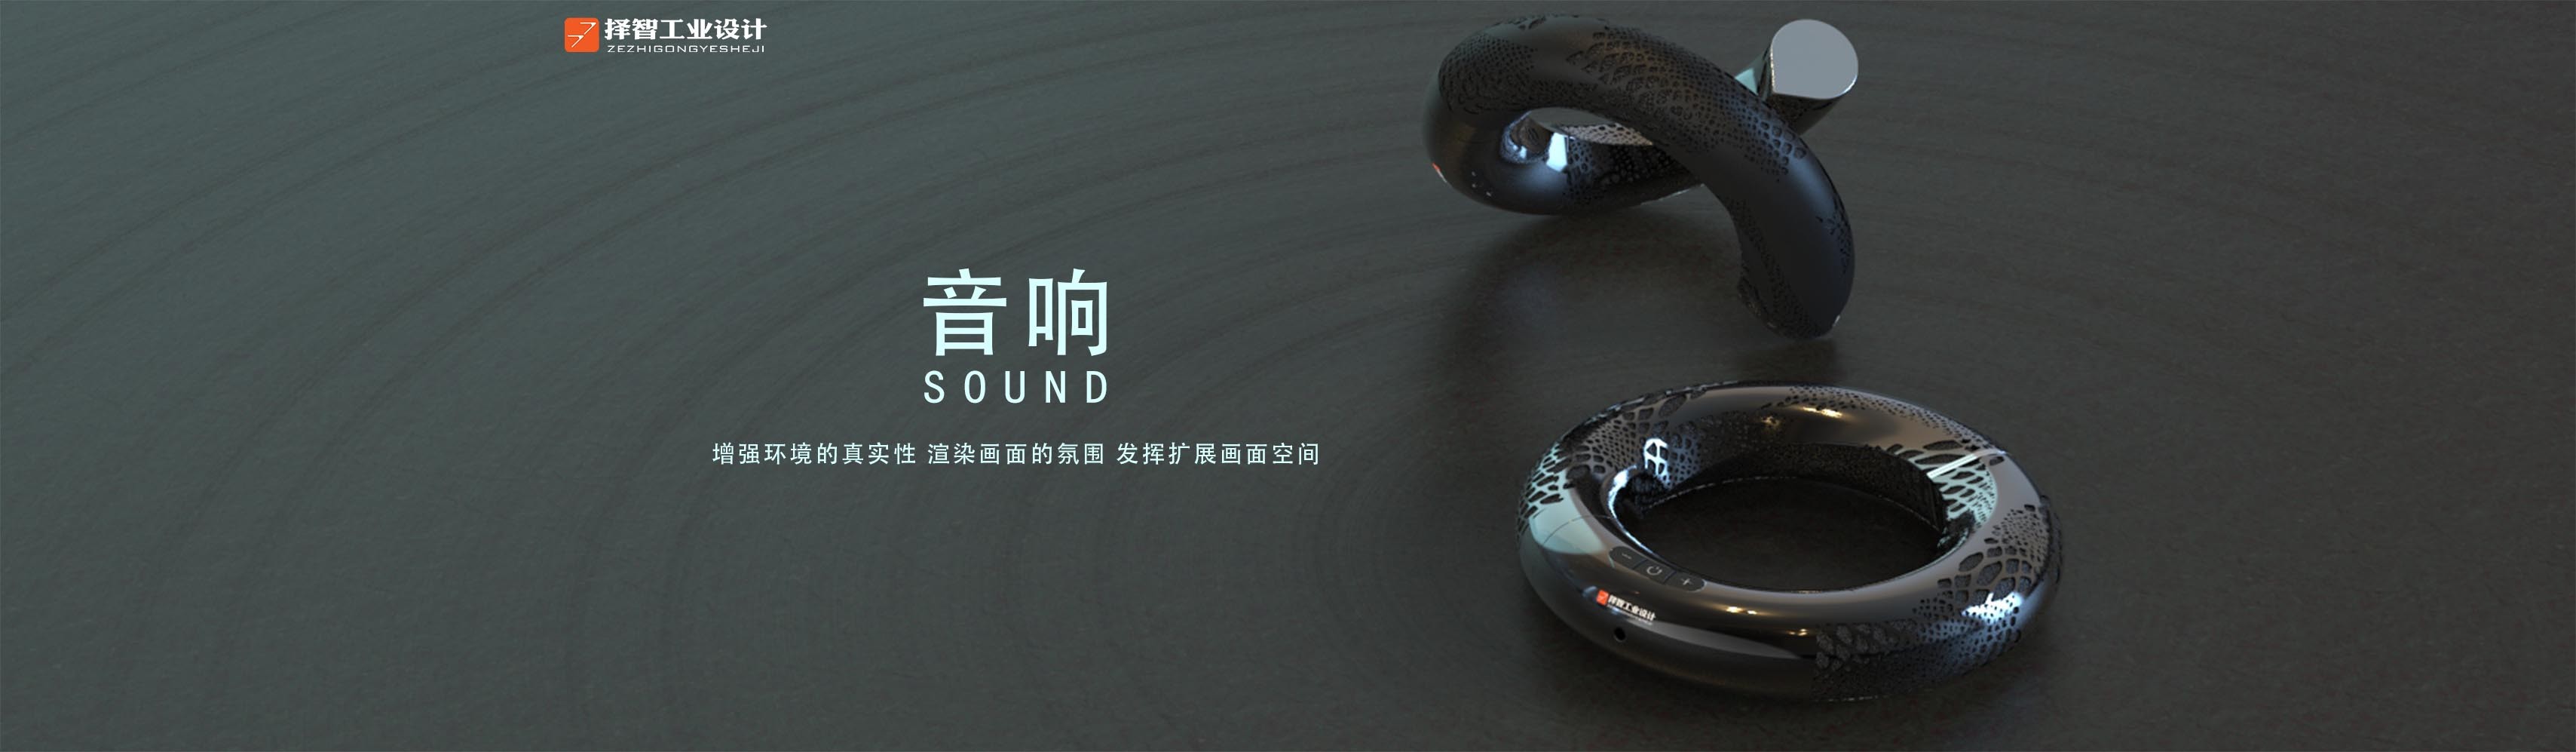 上海苏州产品设计工业产品外观设计结构设计创意音响设计